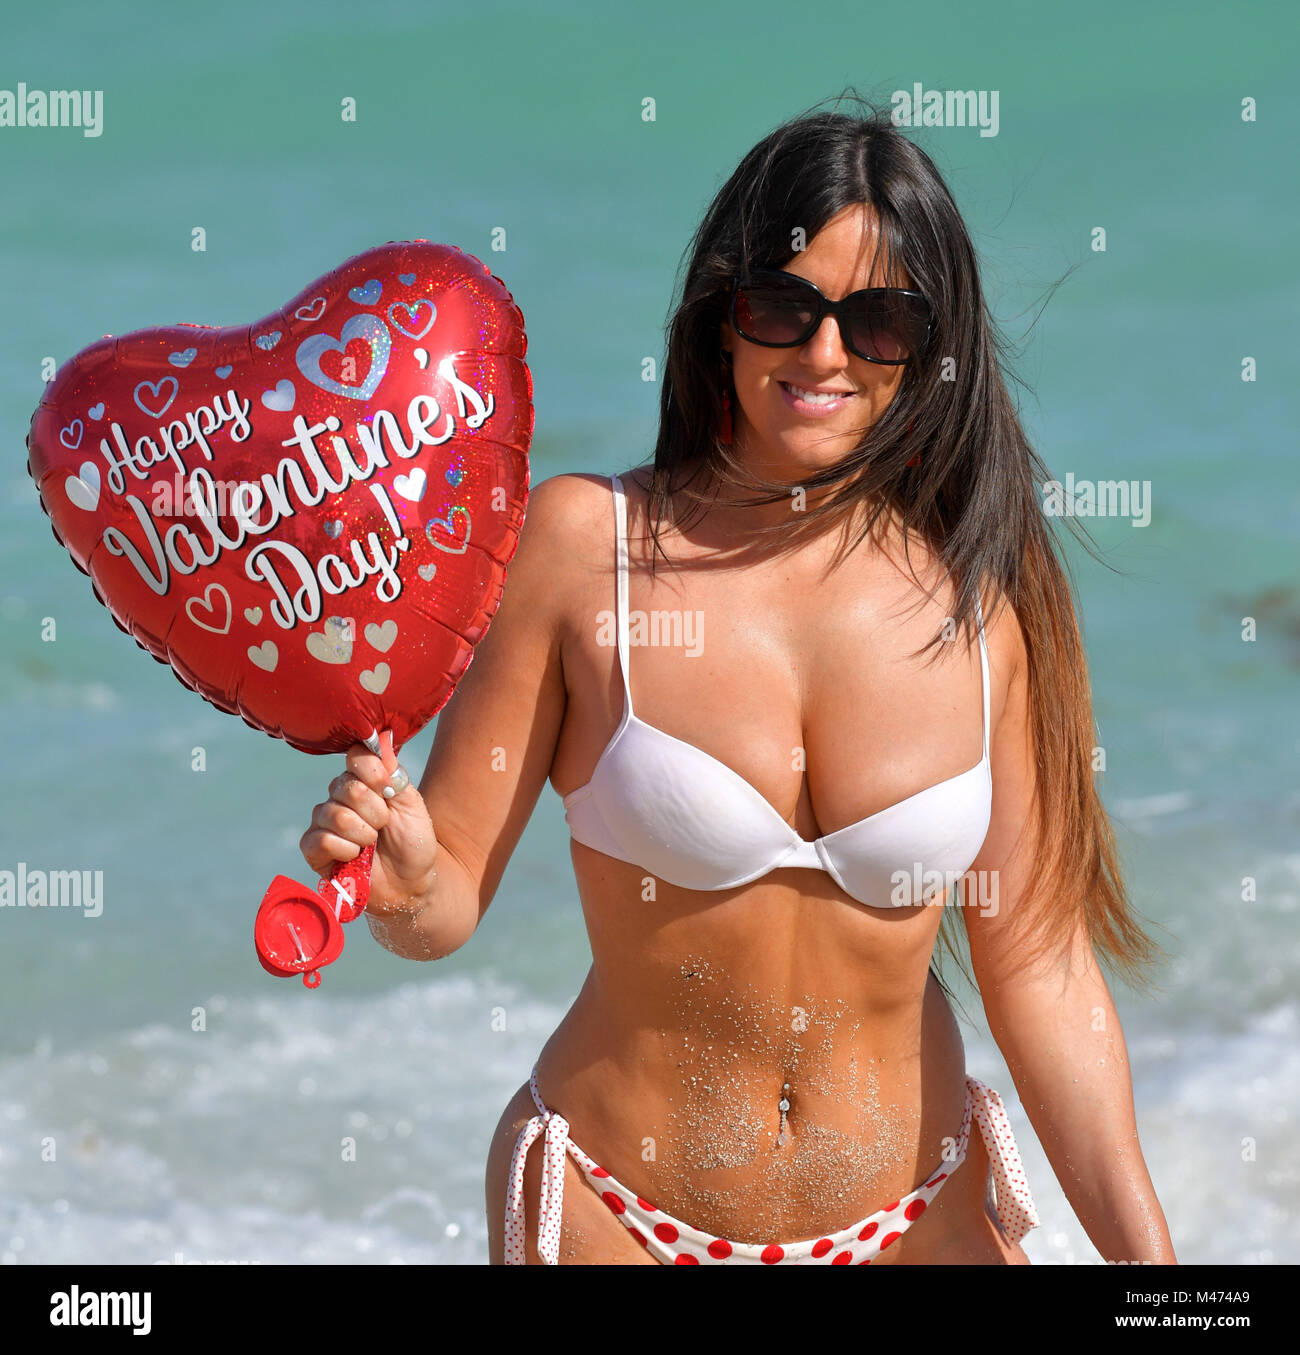 Miami Beach, FL, USA. Feb 14, 2018. (La couverture exclusive) star de  télé-réalité française Secret Story 9 et vainqueur de la fille brune de  l'année 2016 pour Playboy en Italie. Claudia Romani